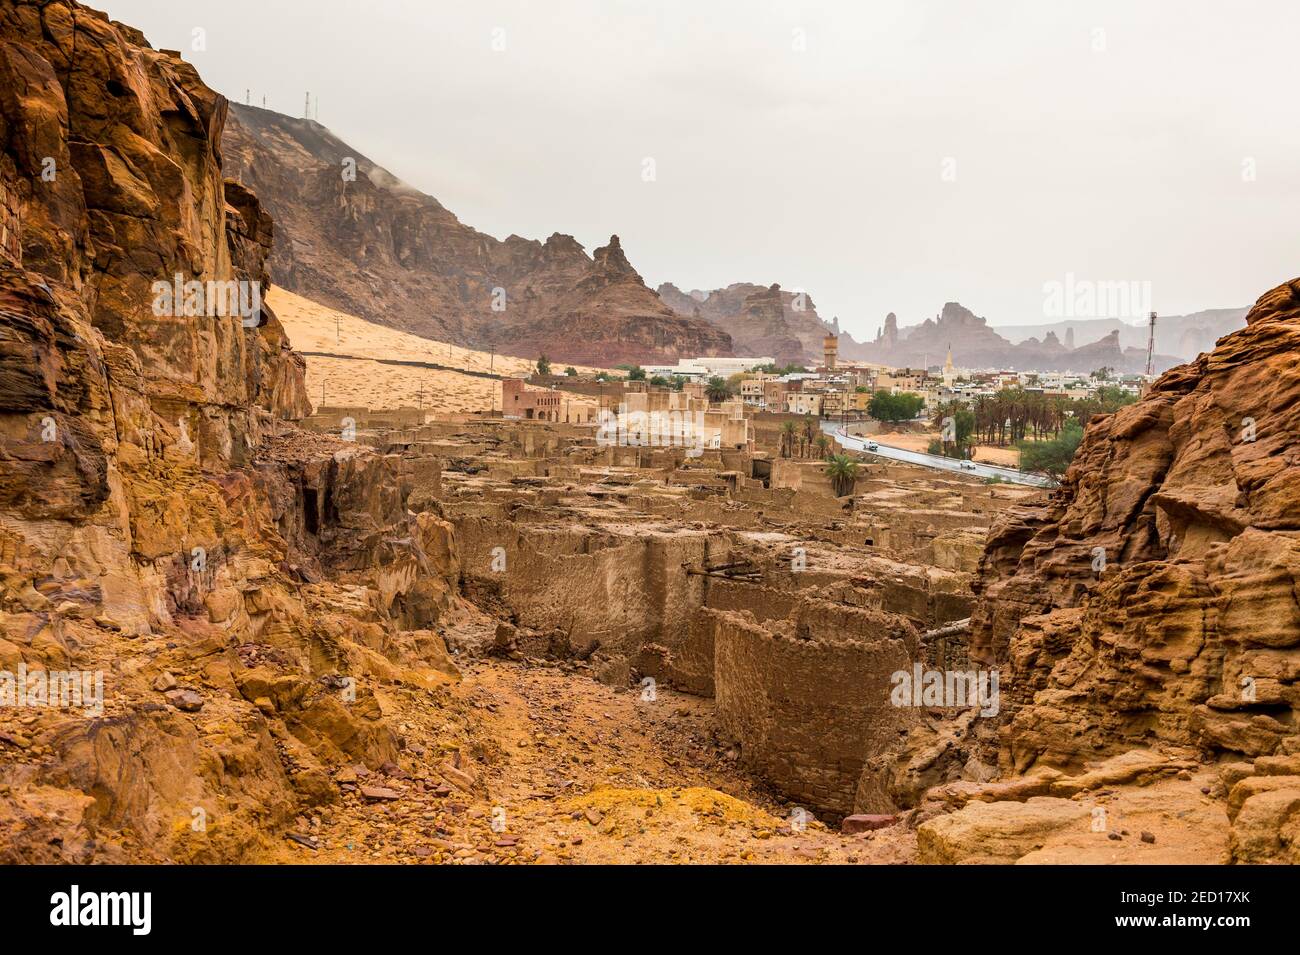 The old ghost town of Al Ula, Saudi Arabia Stock Photo